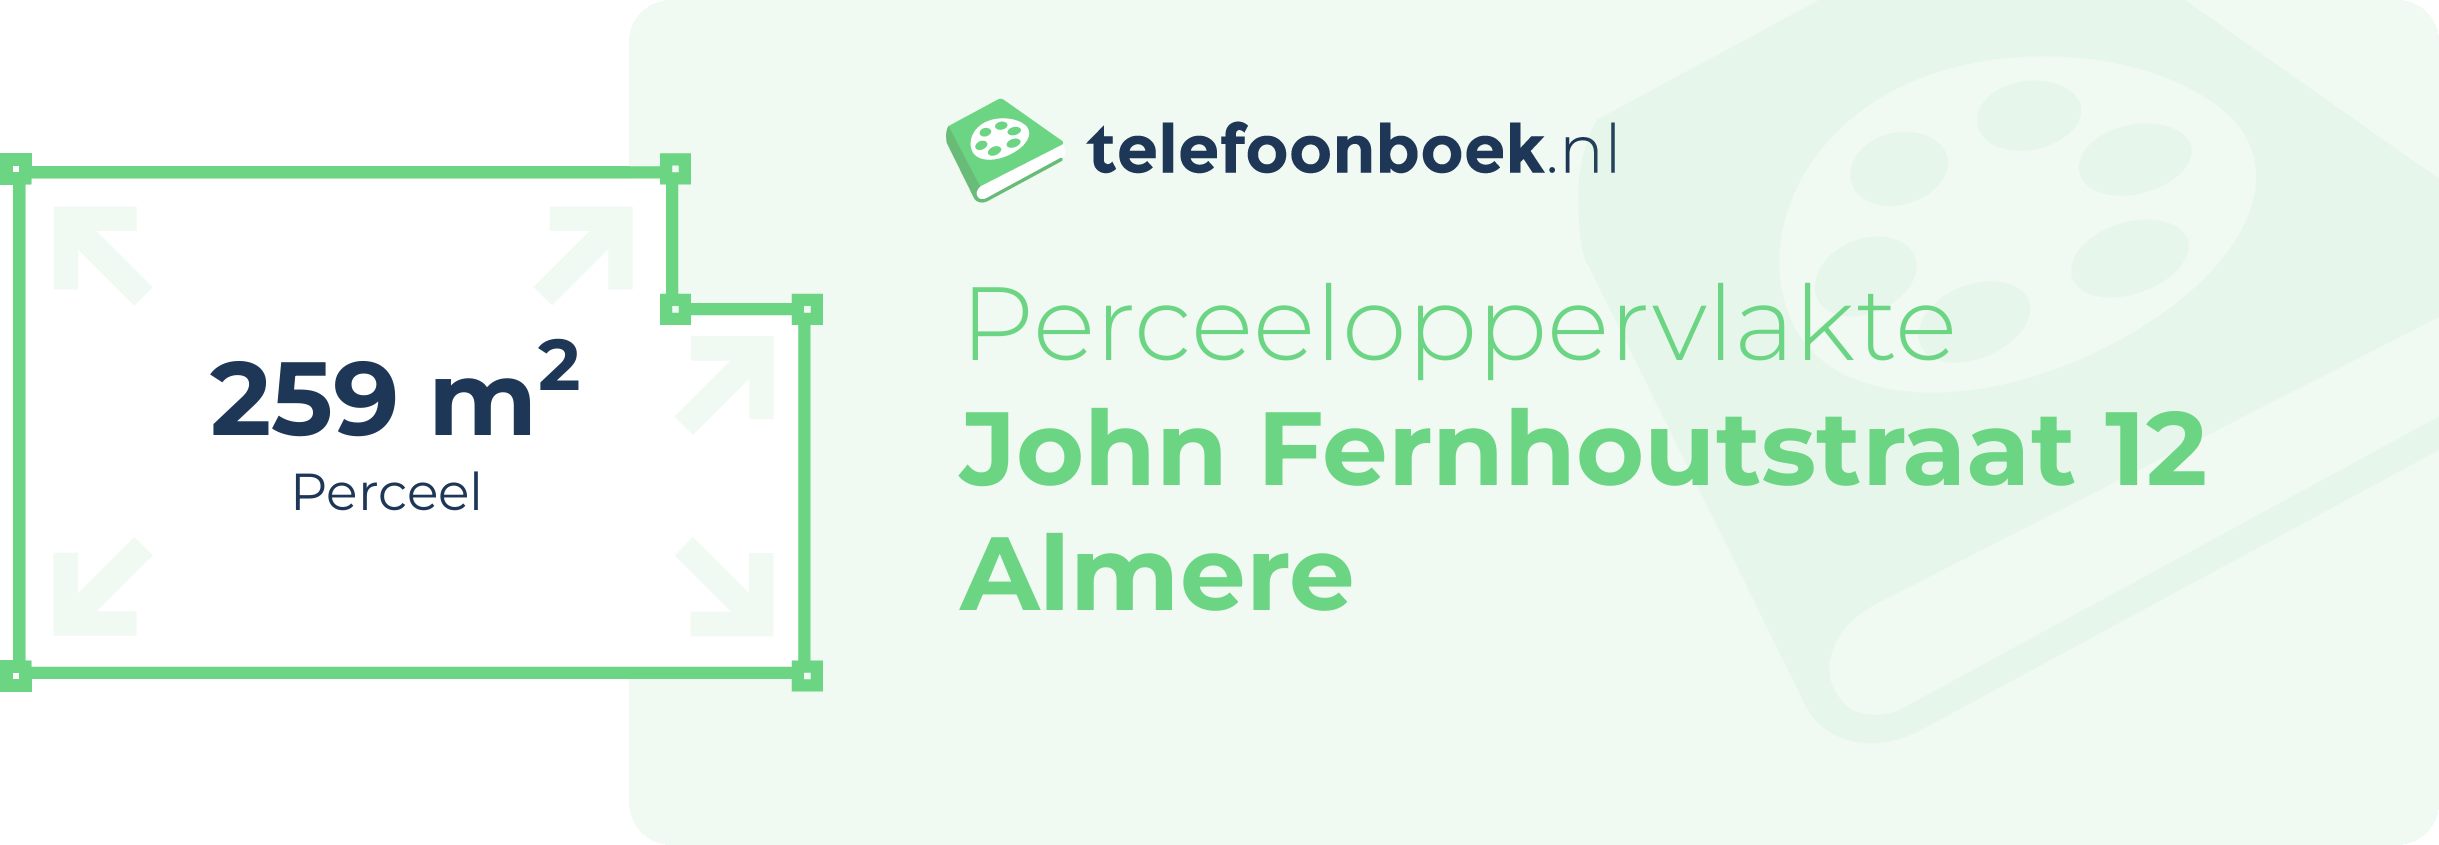 Perceeloppervlakte John Fernhoutstraat 12 Almere